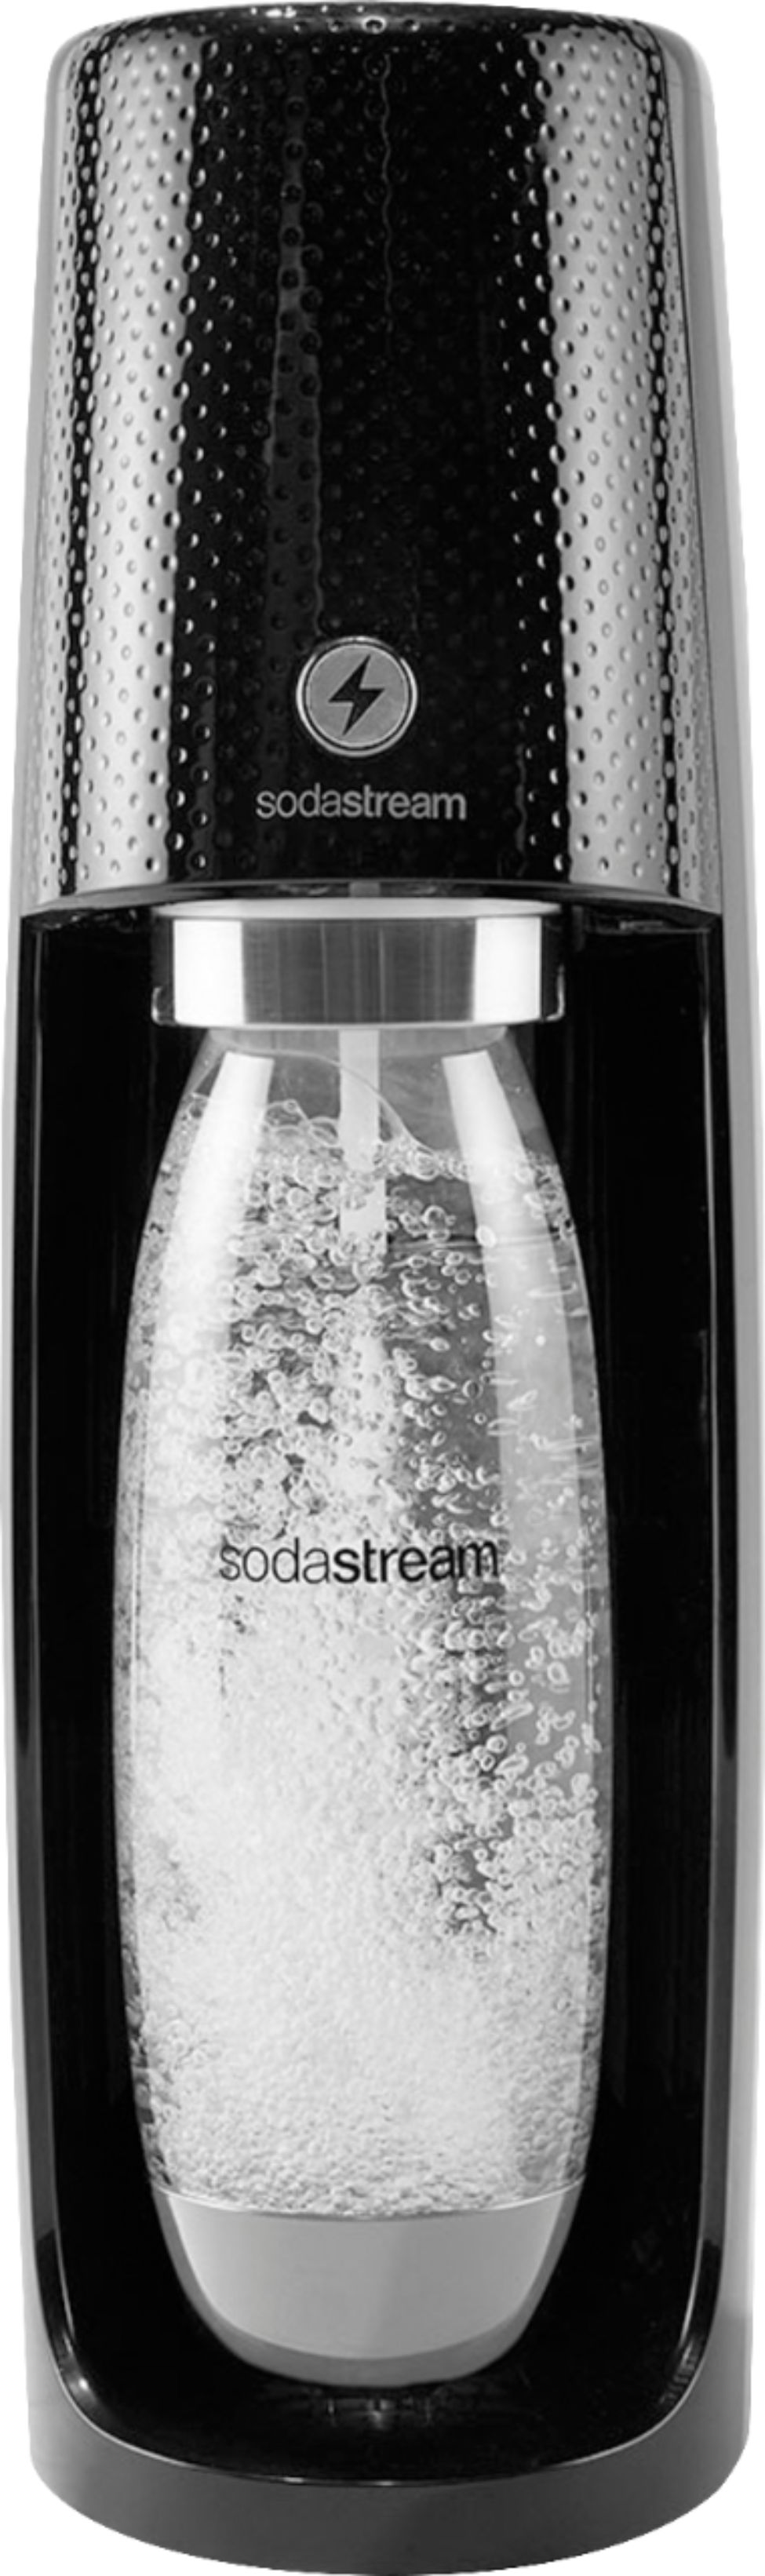 1 L White Slim Bottles Twin Pack - SodaStream